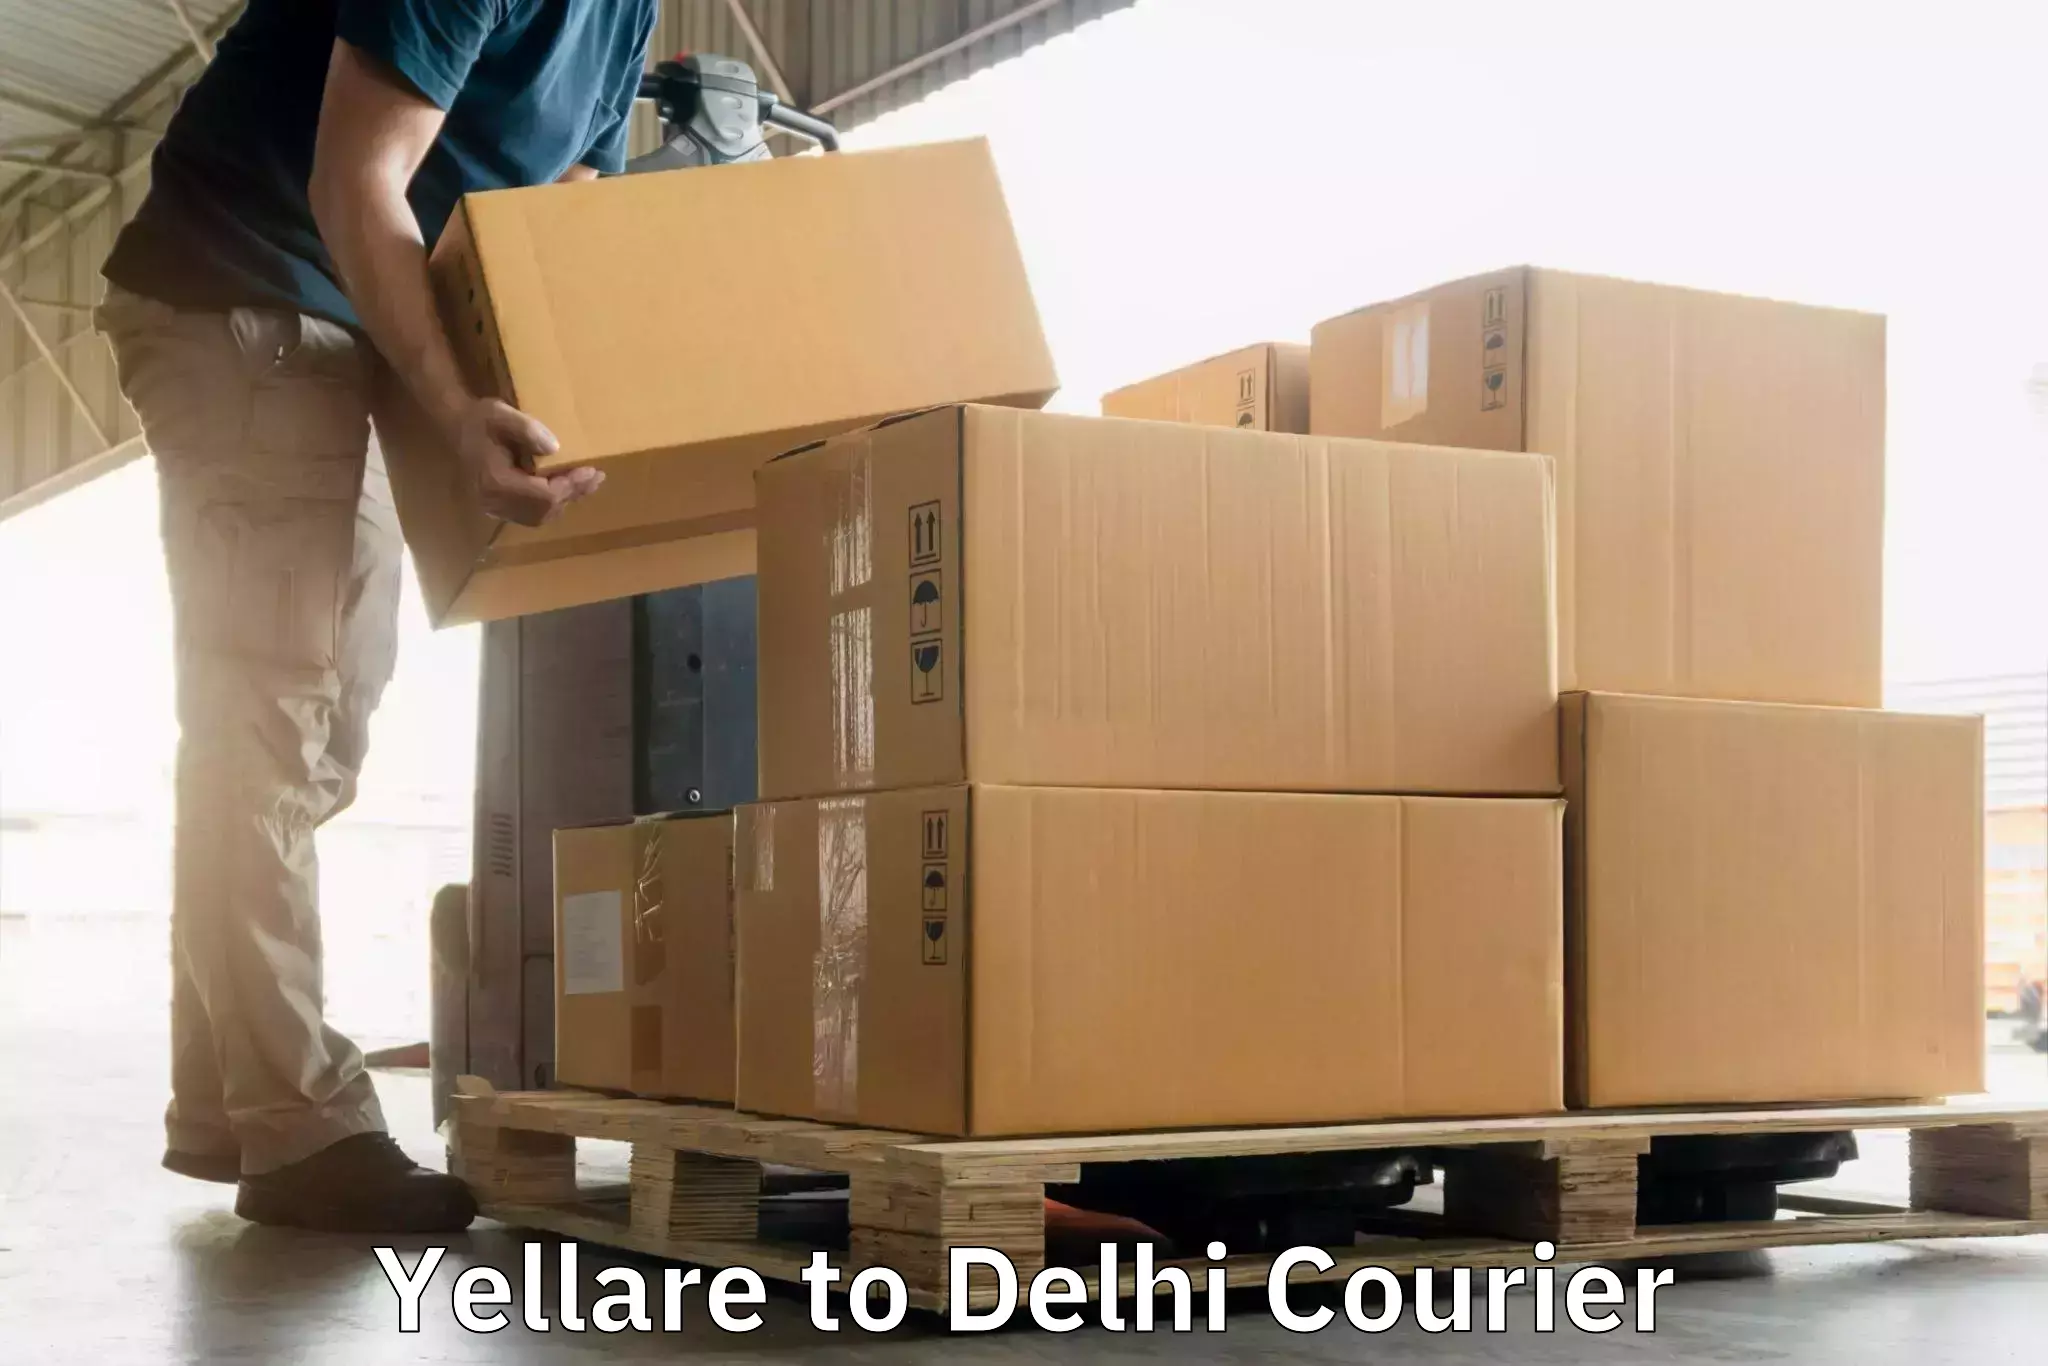 Courier service comparison Yellare to Jamia Hamdard New Delhi